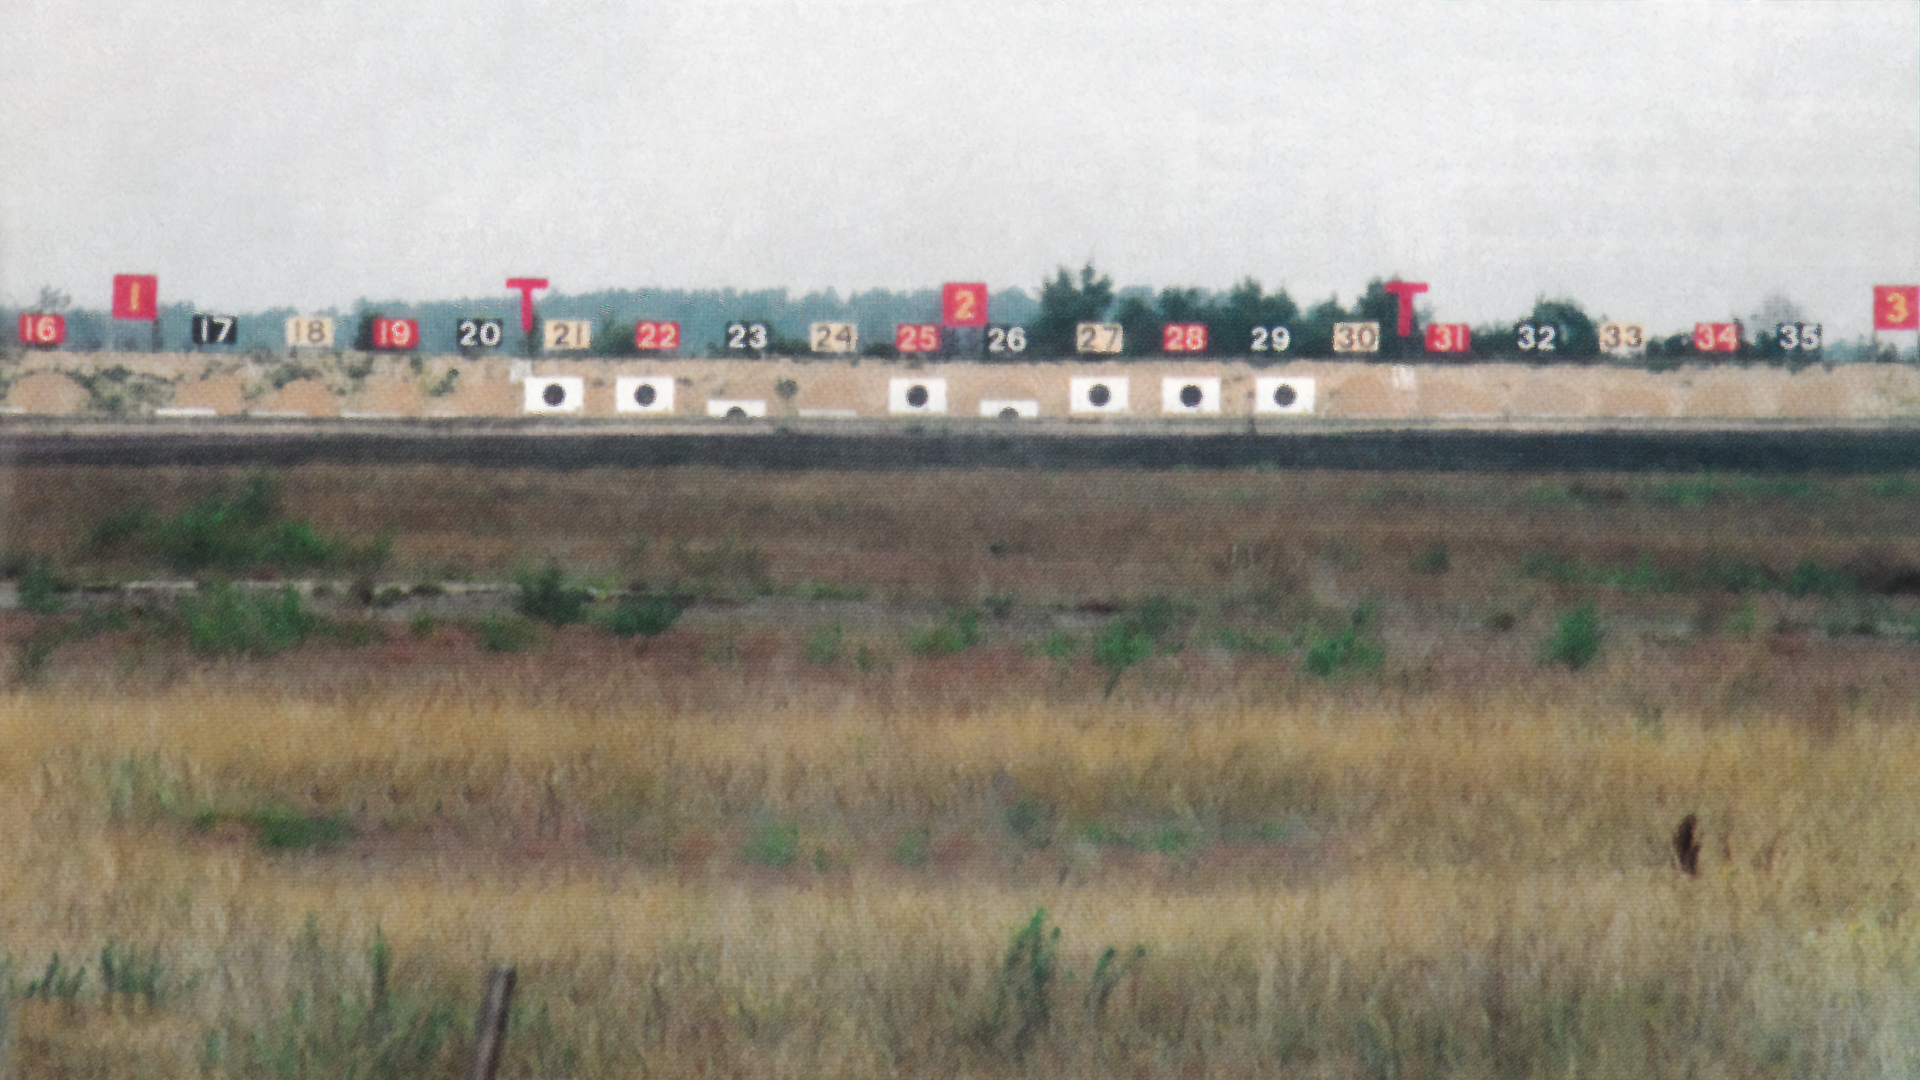 Bisley Range in 2003